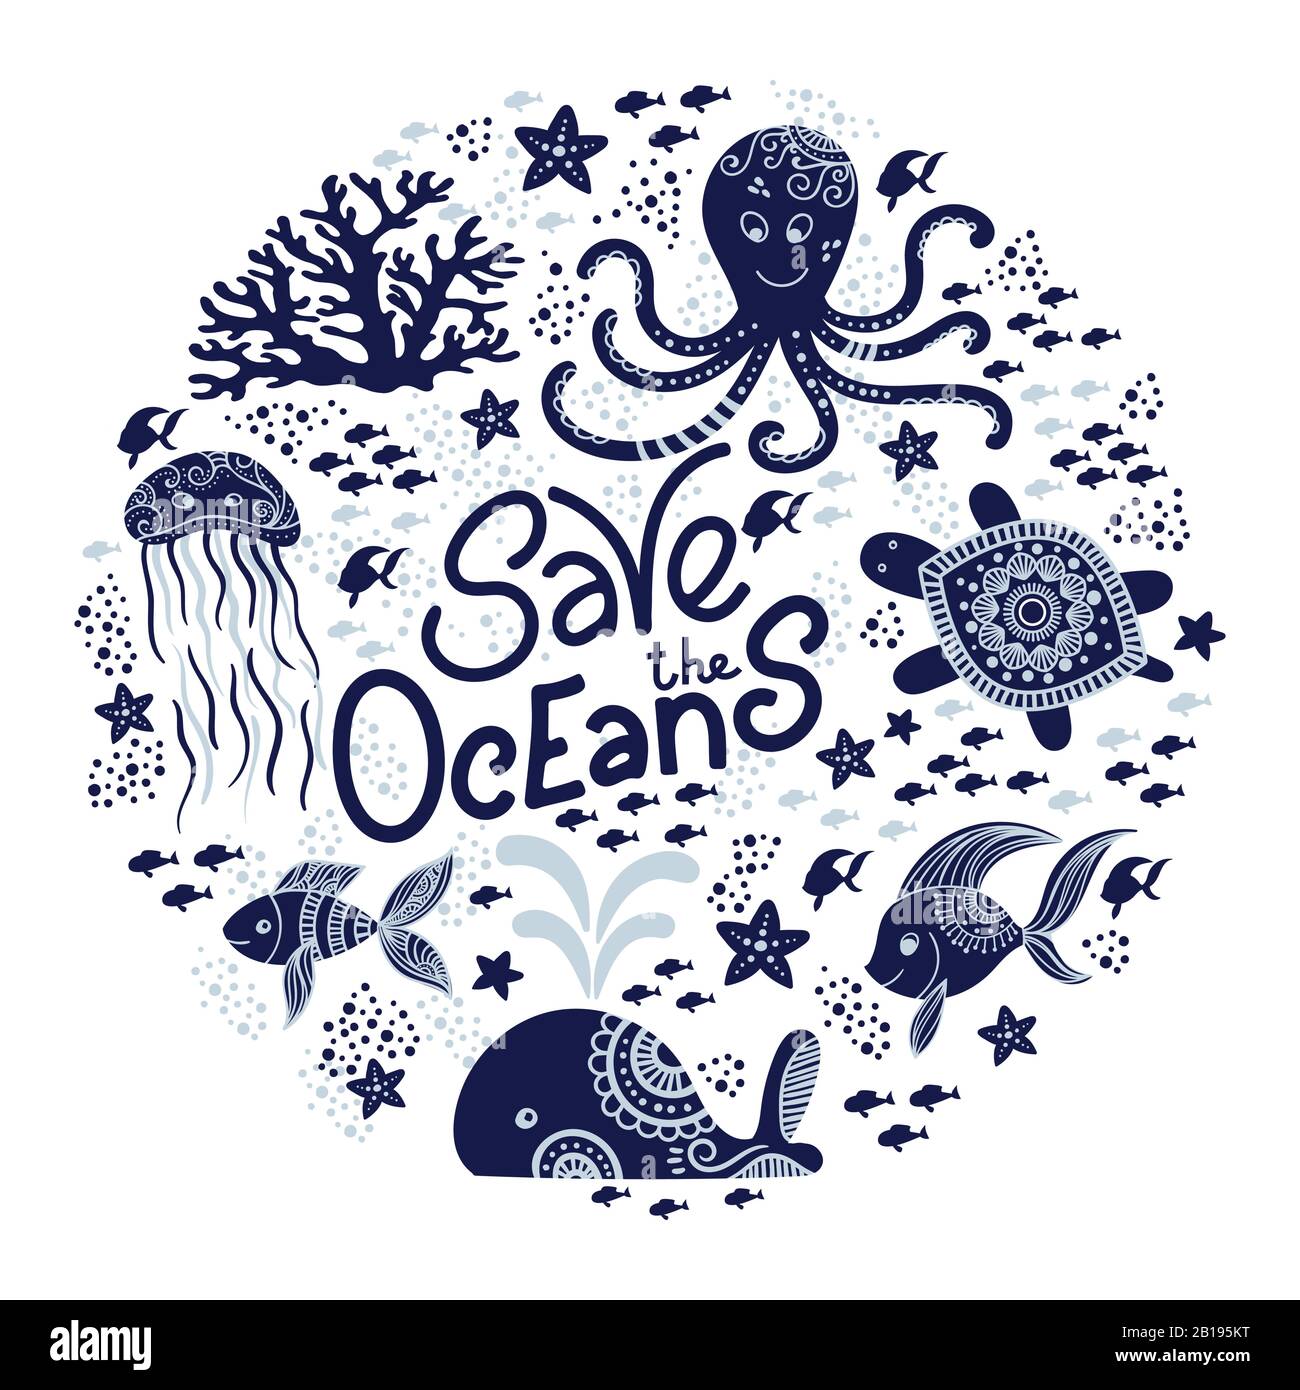 Speichern Sie die ocean Hand gezeichnet Schriftzug und Unterwasser Tiere. Quallen, Wale, Octopus, Seesterne und Schildkröten. Vector Illustration in doodle Stil. Ozean Konzept Schützen Stock Vektor